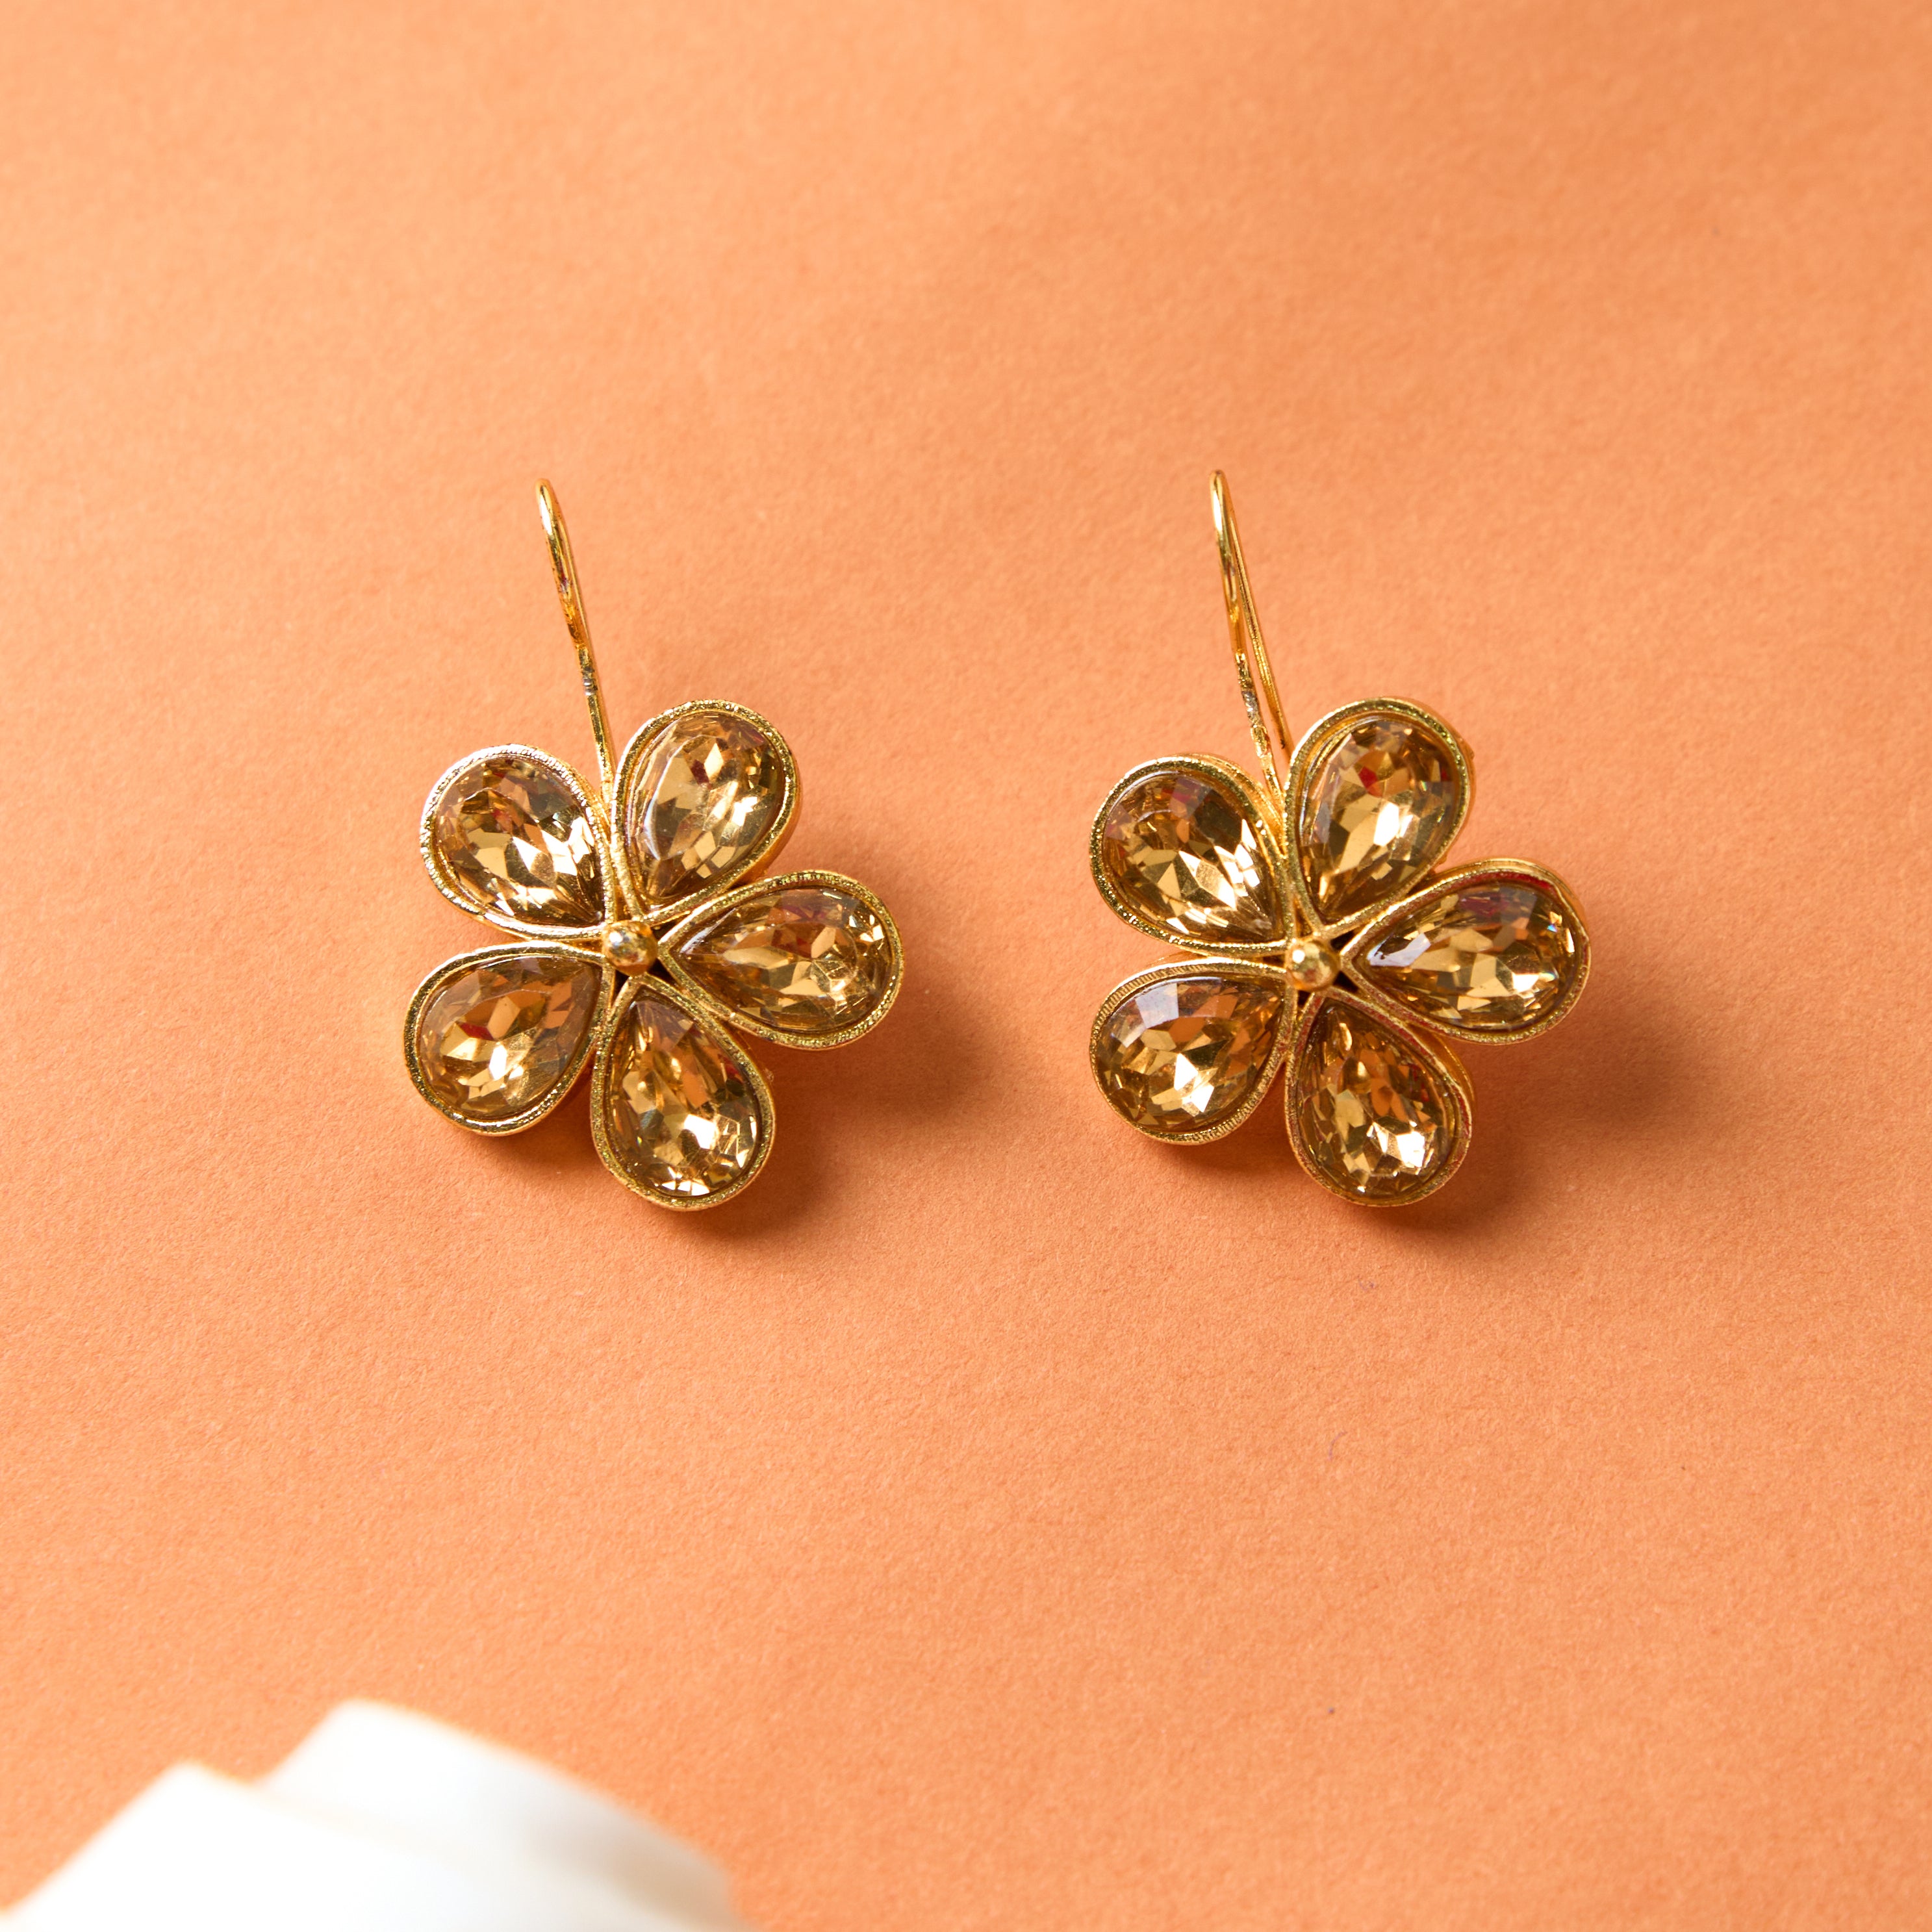 Buy Gold Flower Stud Earrings, Tiny Flower Earrings, Girls Earrings, Small  Stud Earrings, Flower Earrings, Bat Mitzvah Gift, Gold Stud Earrings Online  in India - Etsy